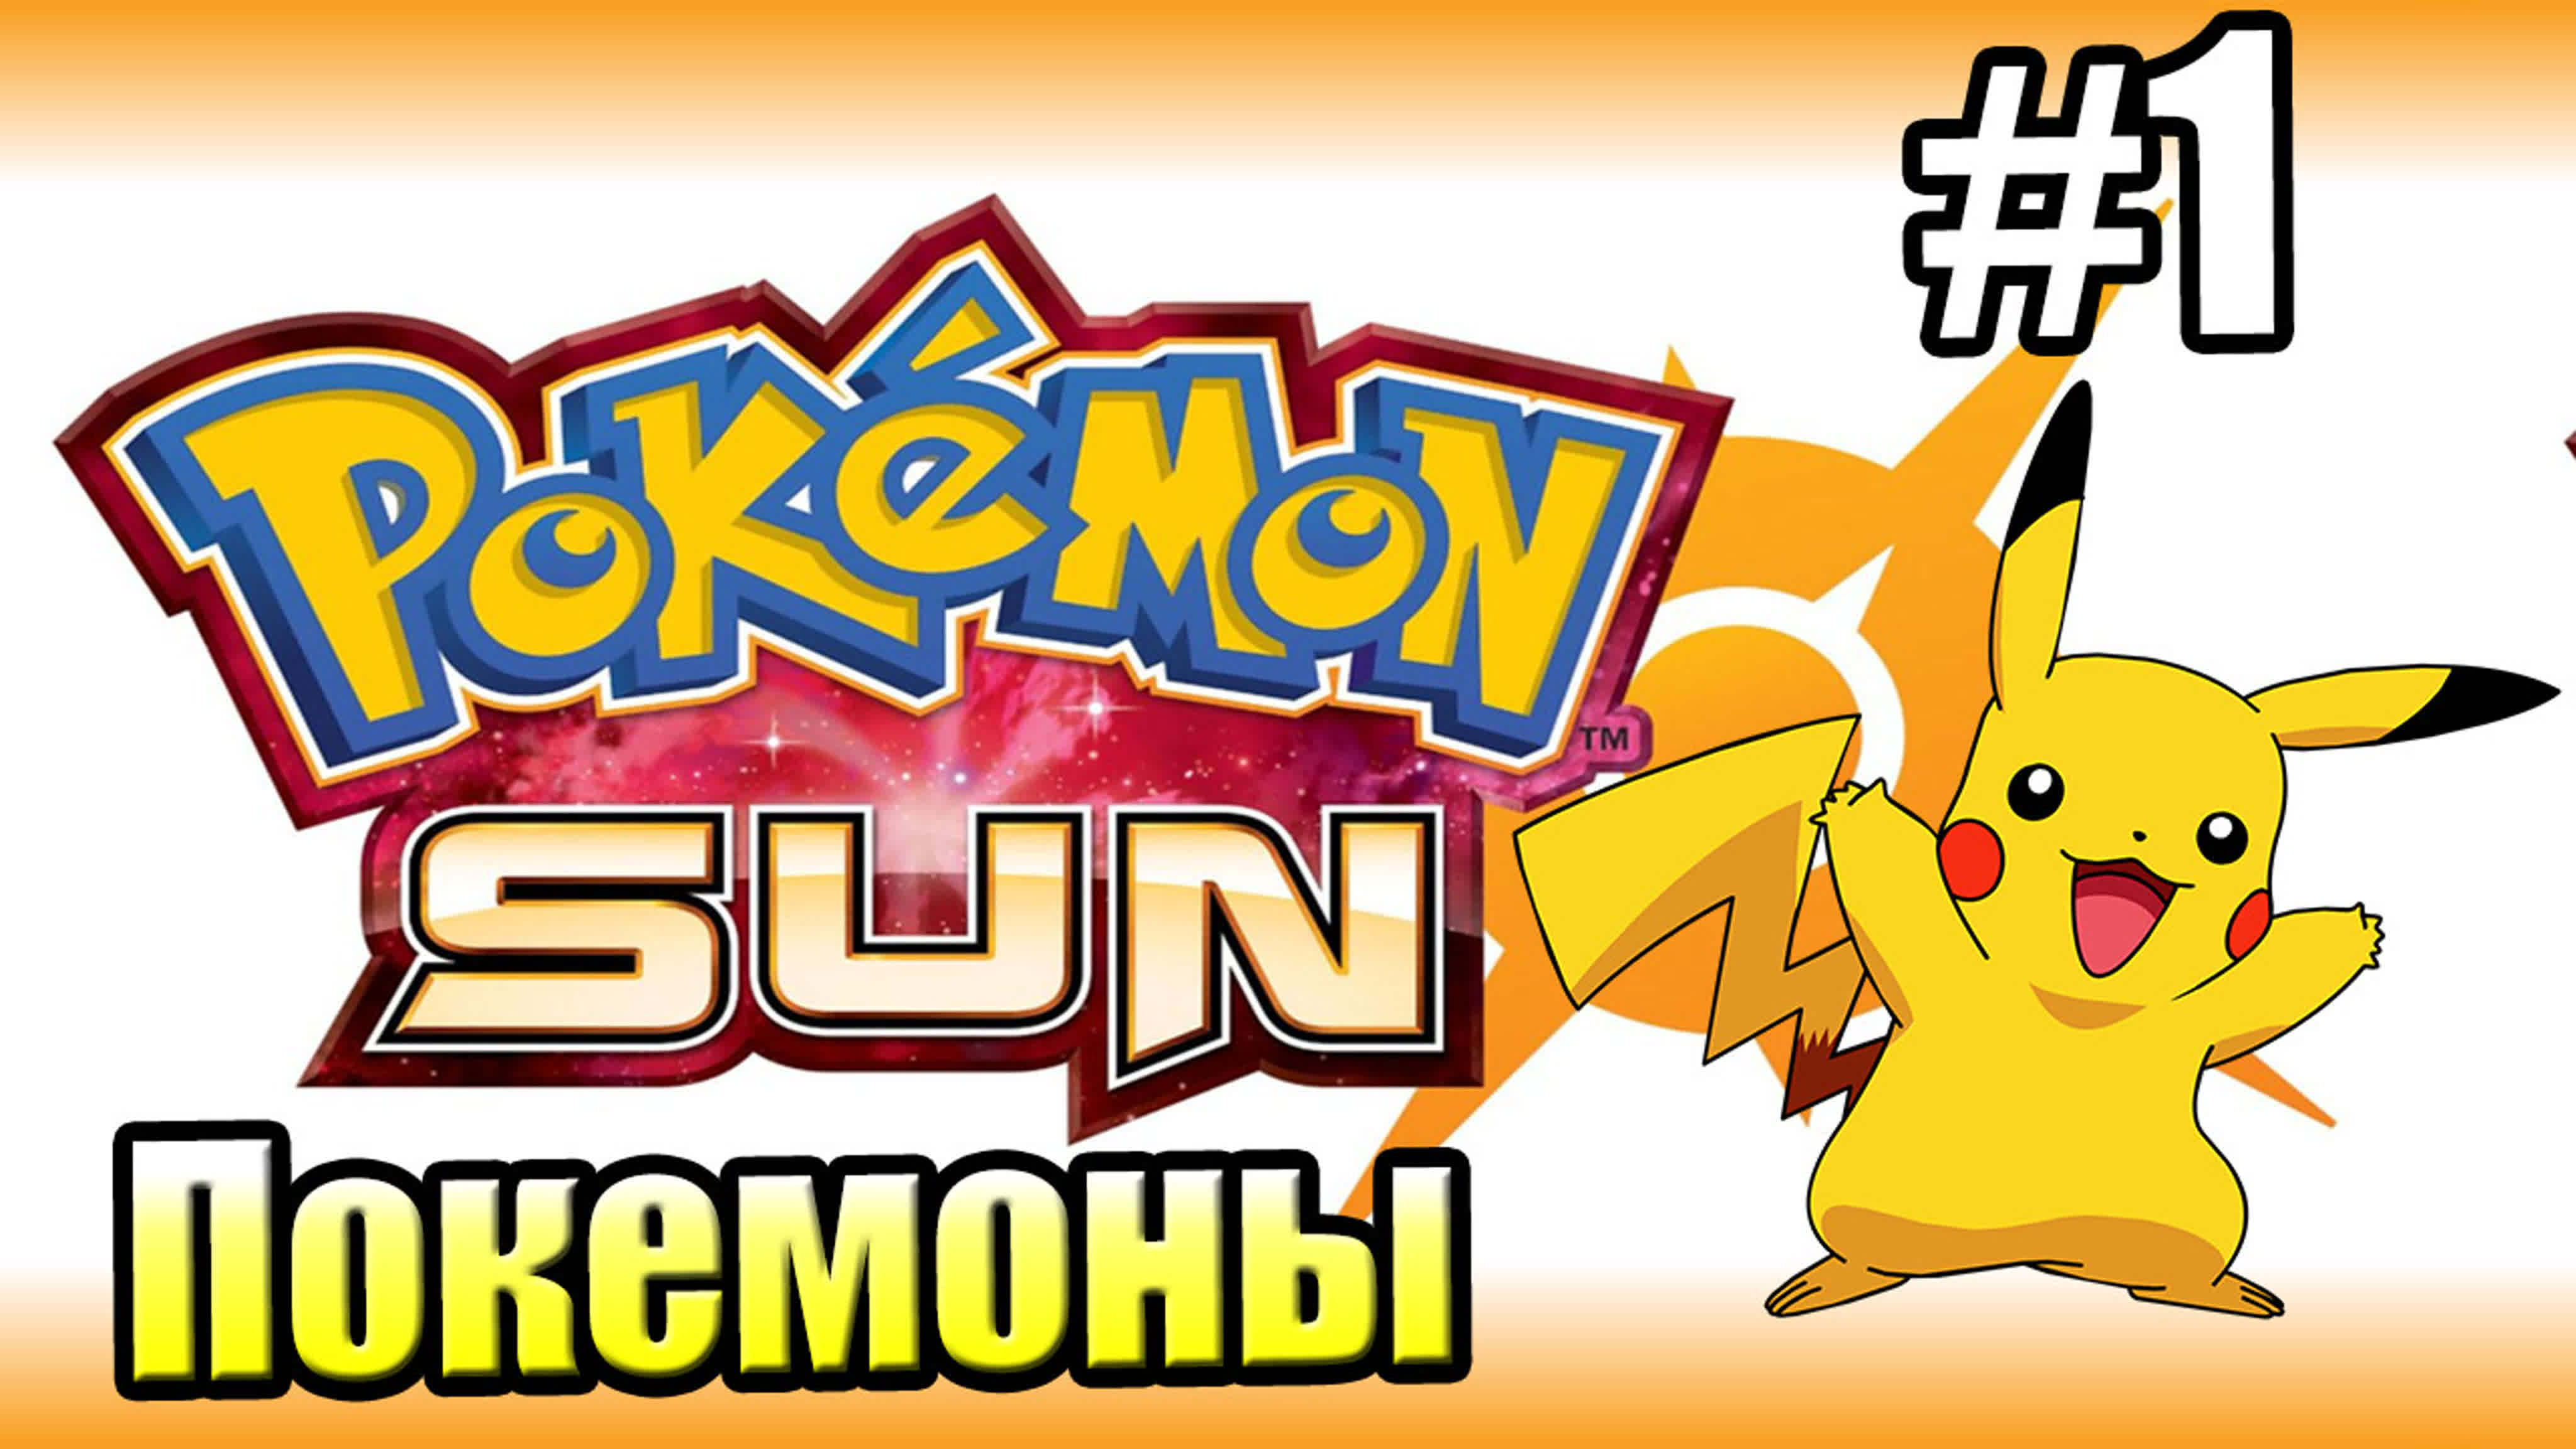 Pokemon Sun (3DS)